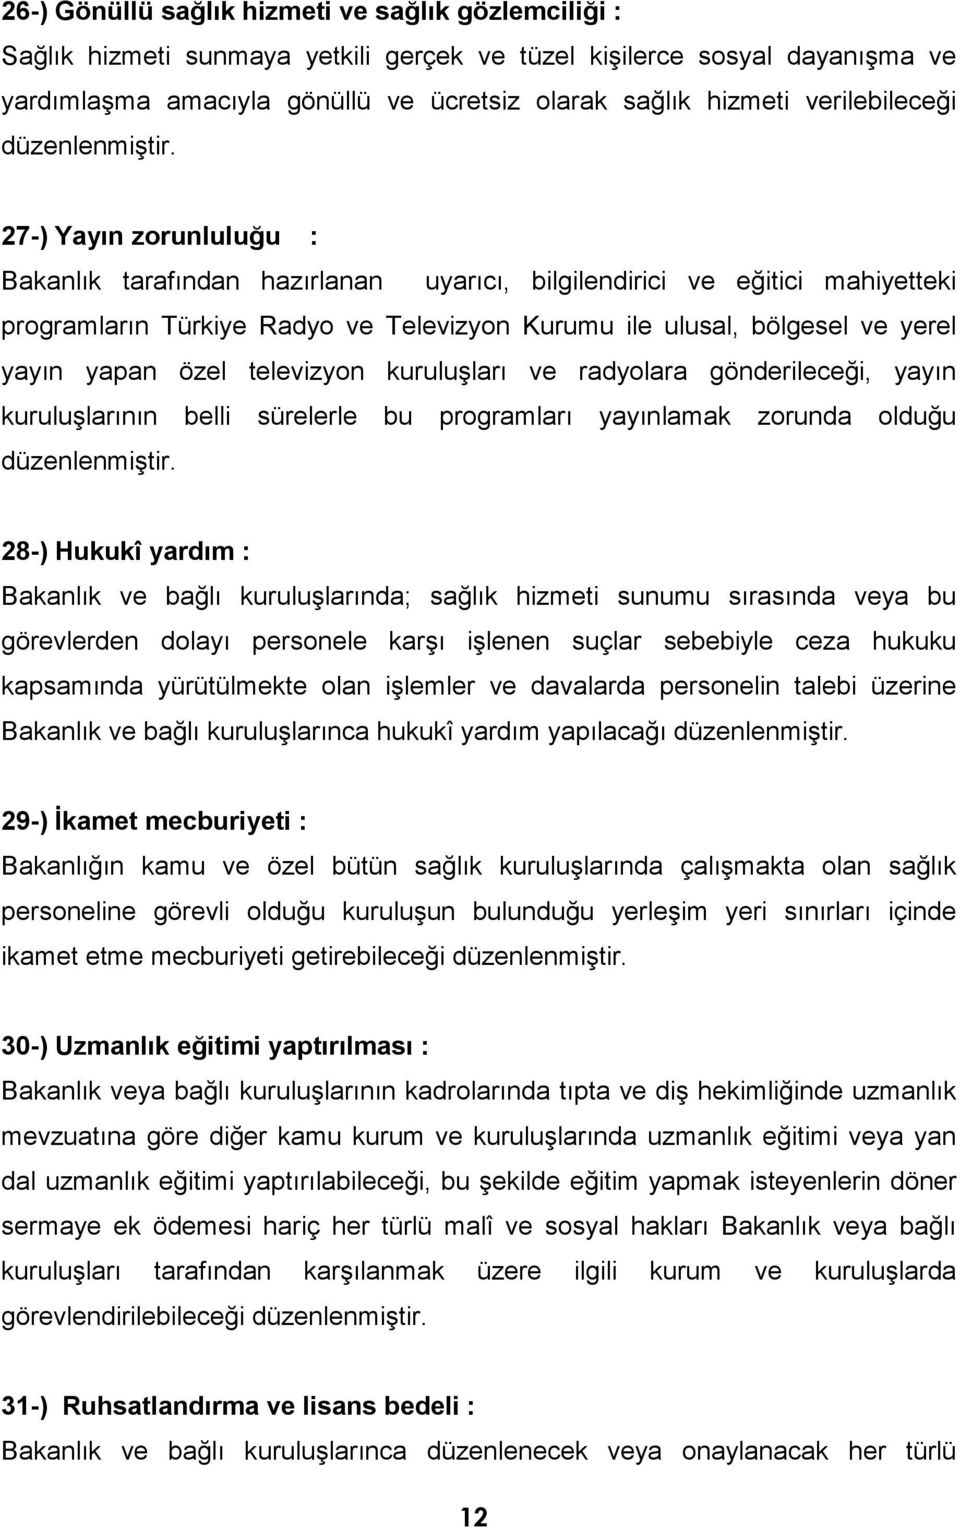 27-) Yayın zorunluluğu : Bakanlık tarafından hazırlanan uyarıcı, bilgilendirici ve eğitici mahiyetteki programların Türkiye Radyo ve Televizyon Kurumu ile ulusal, bölgesel ve yerel yayın yapan özel